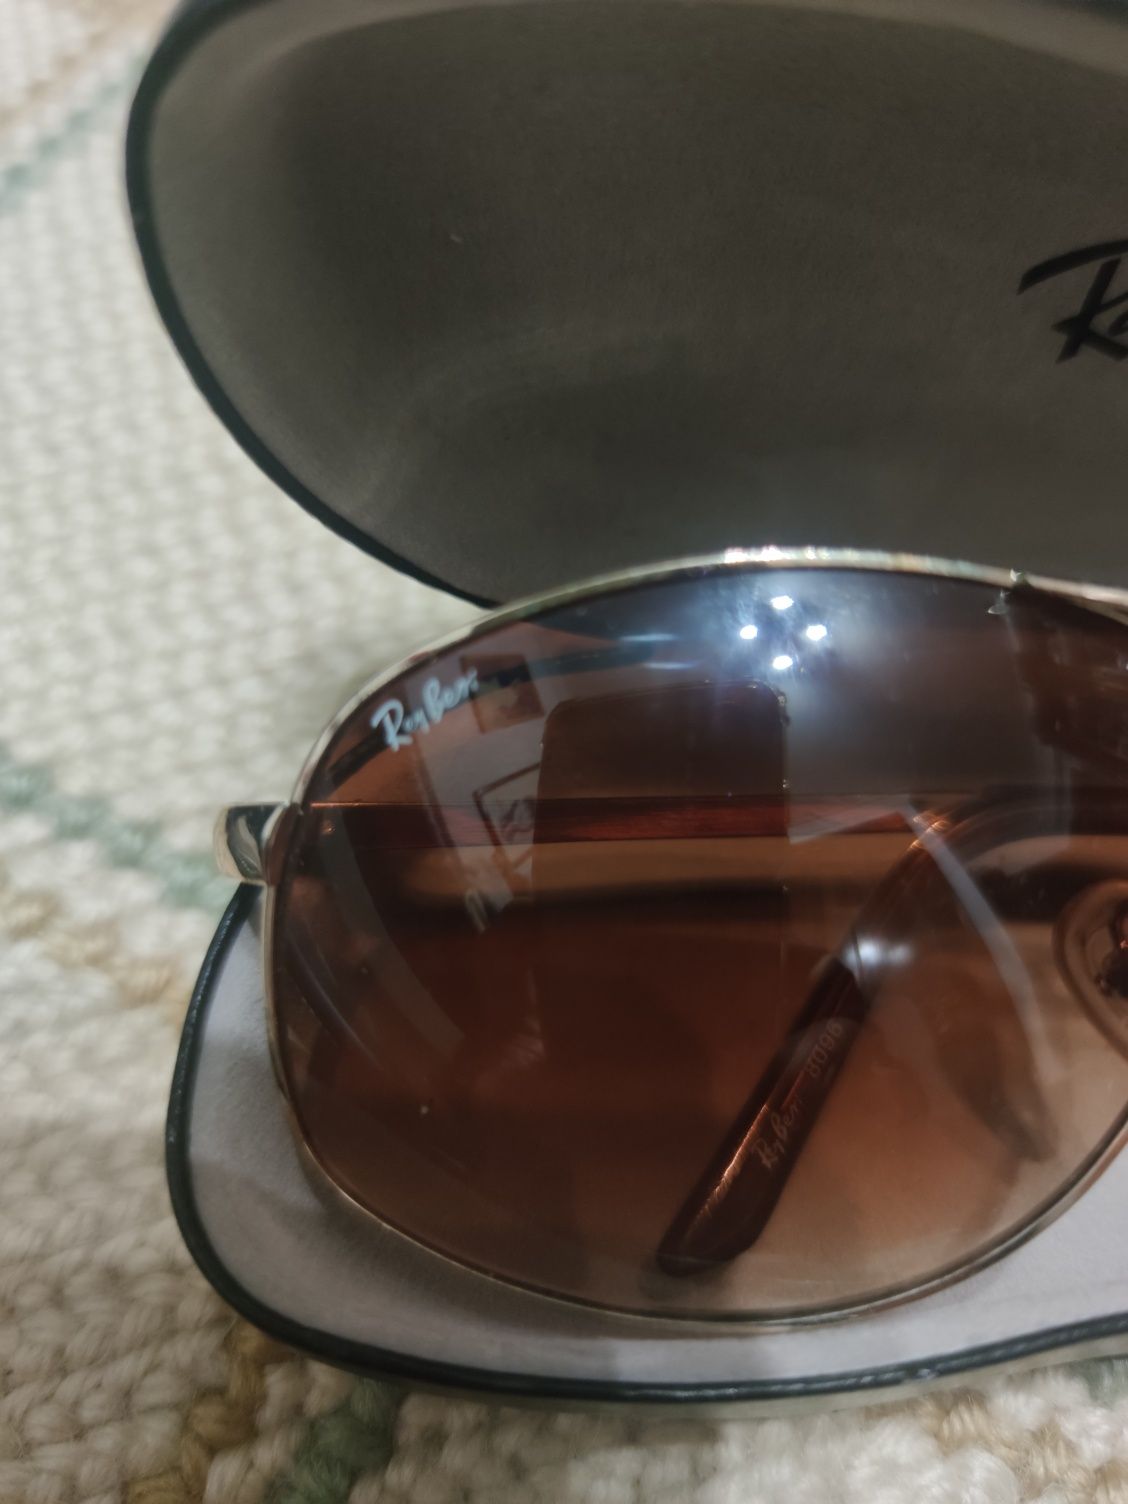 Oculos de sol Ray Ban